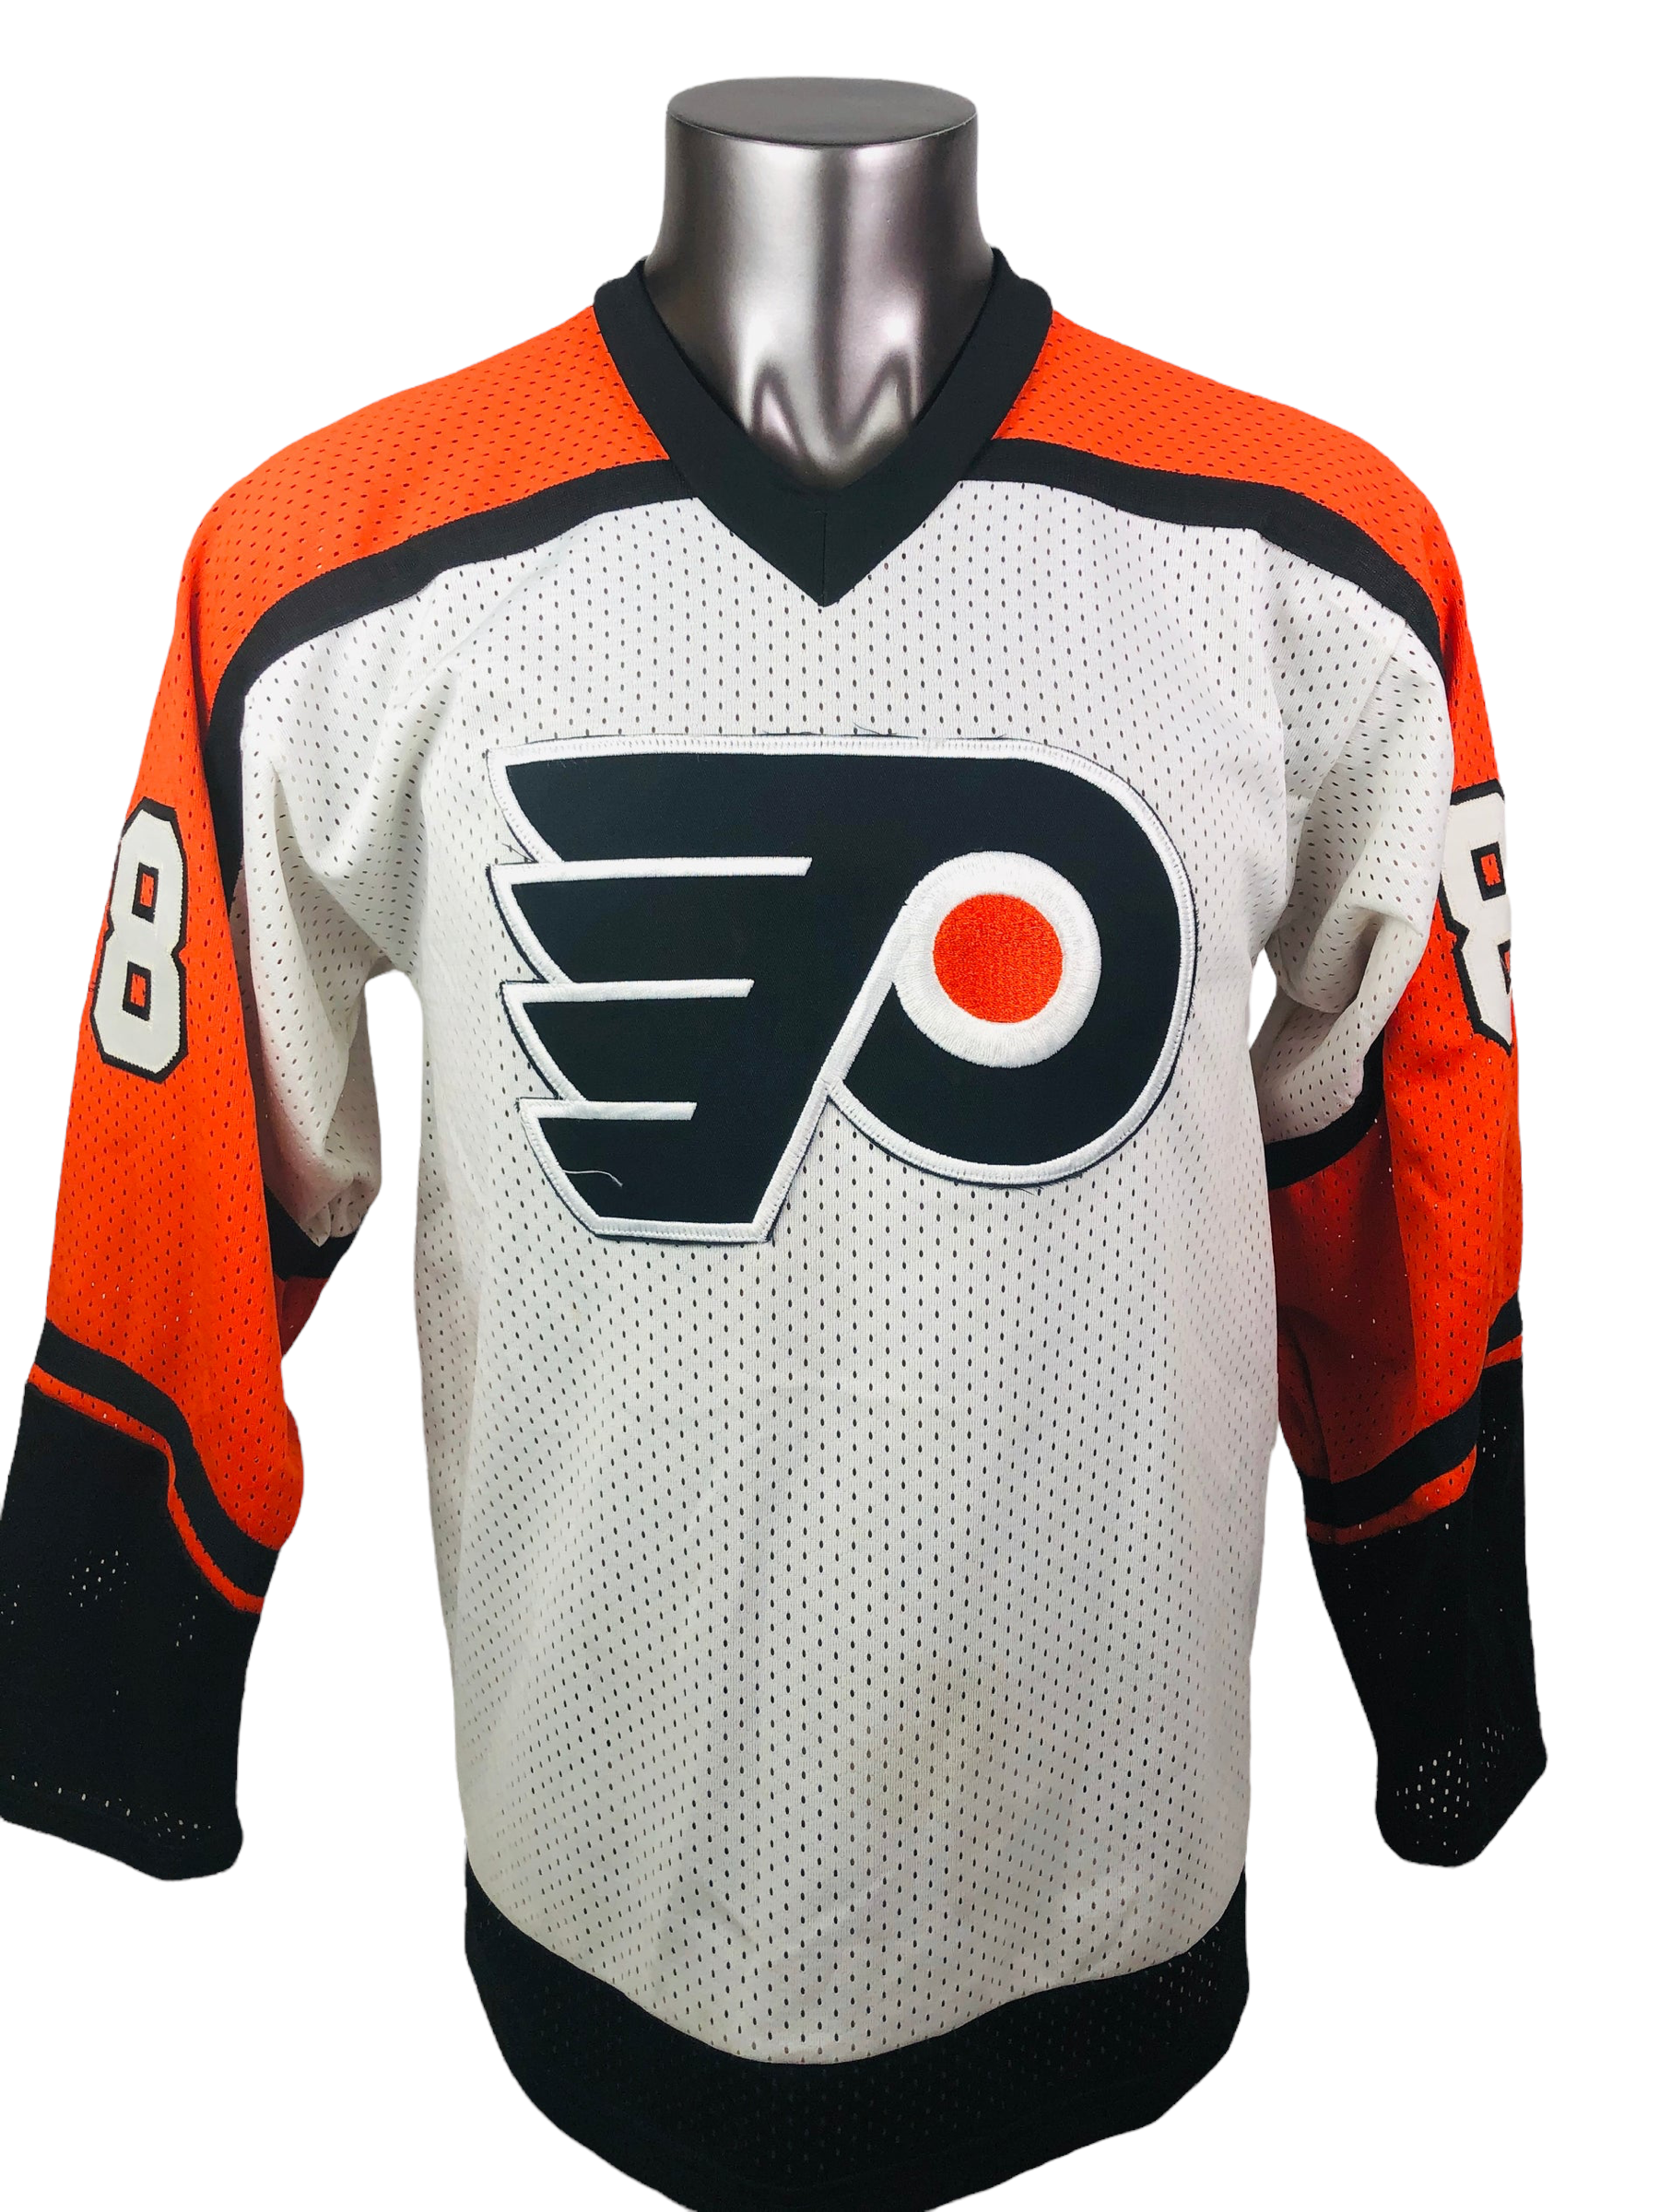 Philadelphia Flyers Apparel & Gear